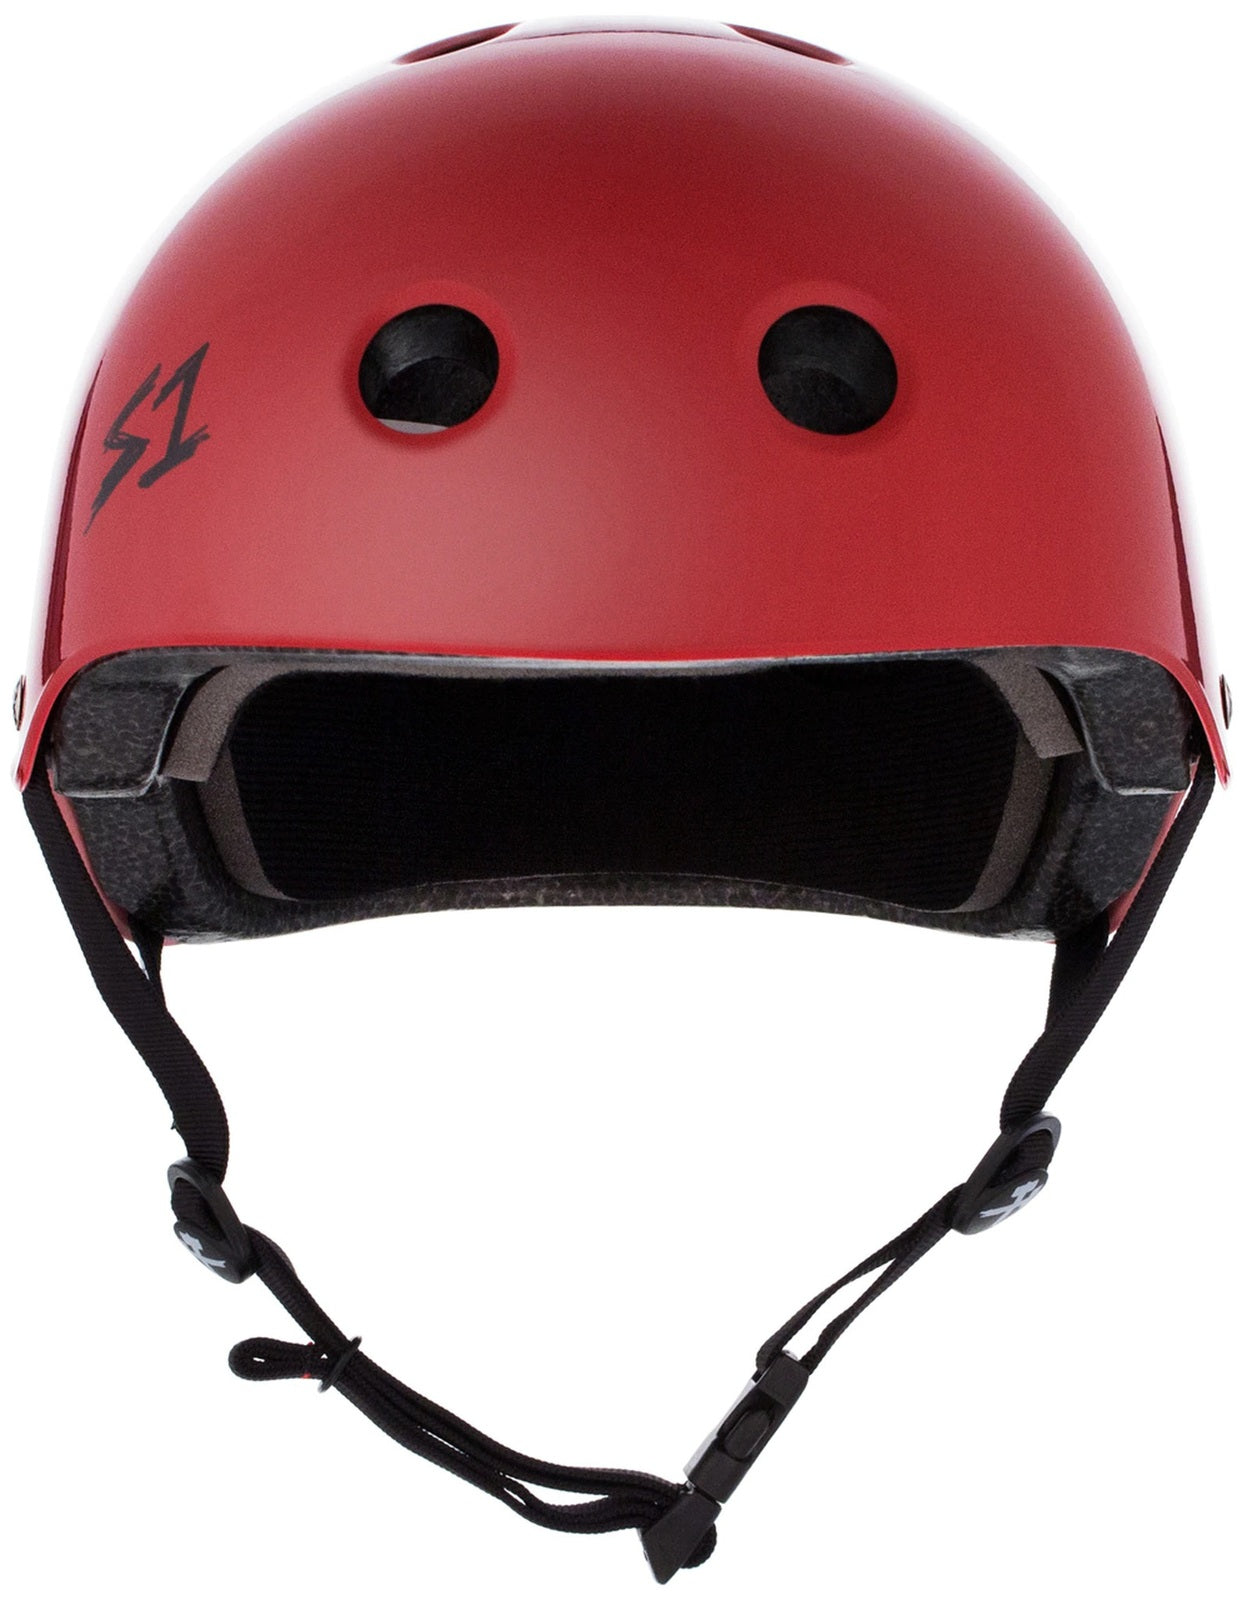 S1 Lifer Helmet - Blood Red